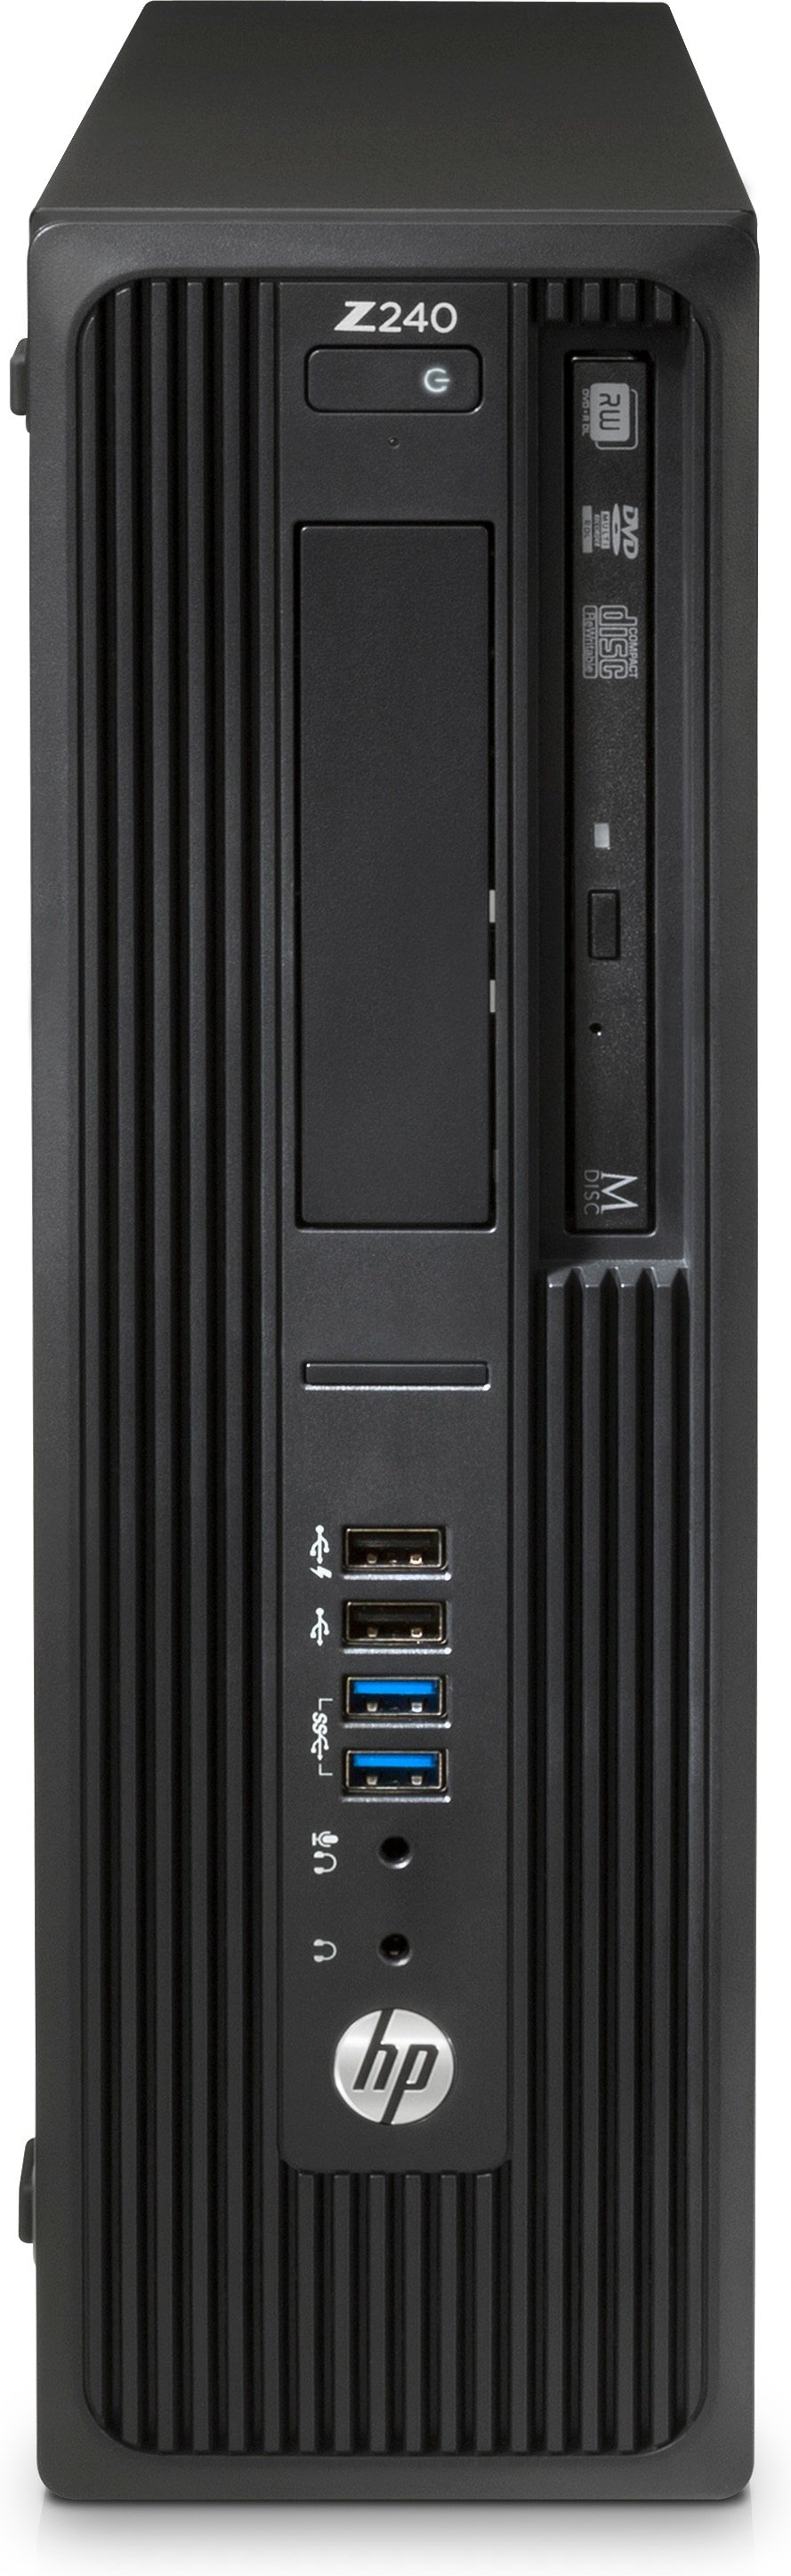 Desktop Hp Z240 Core I5-6500 4Gb 1Tb Nvidia Quadro K420 W10 Pro